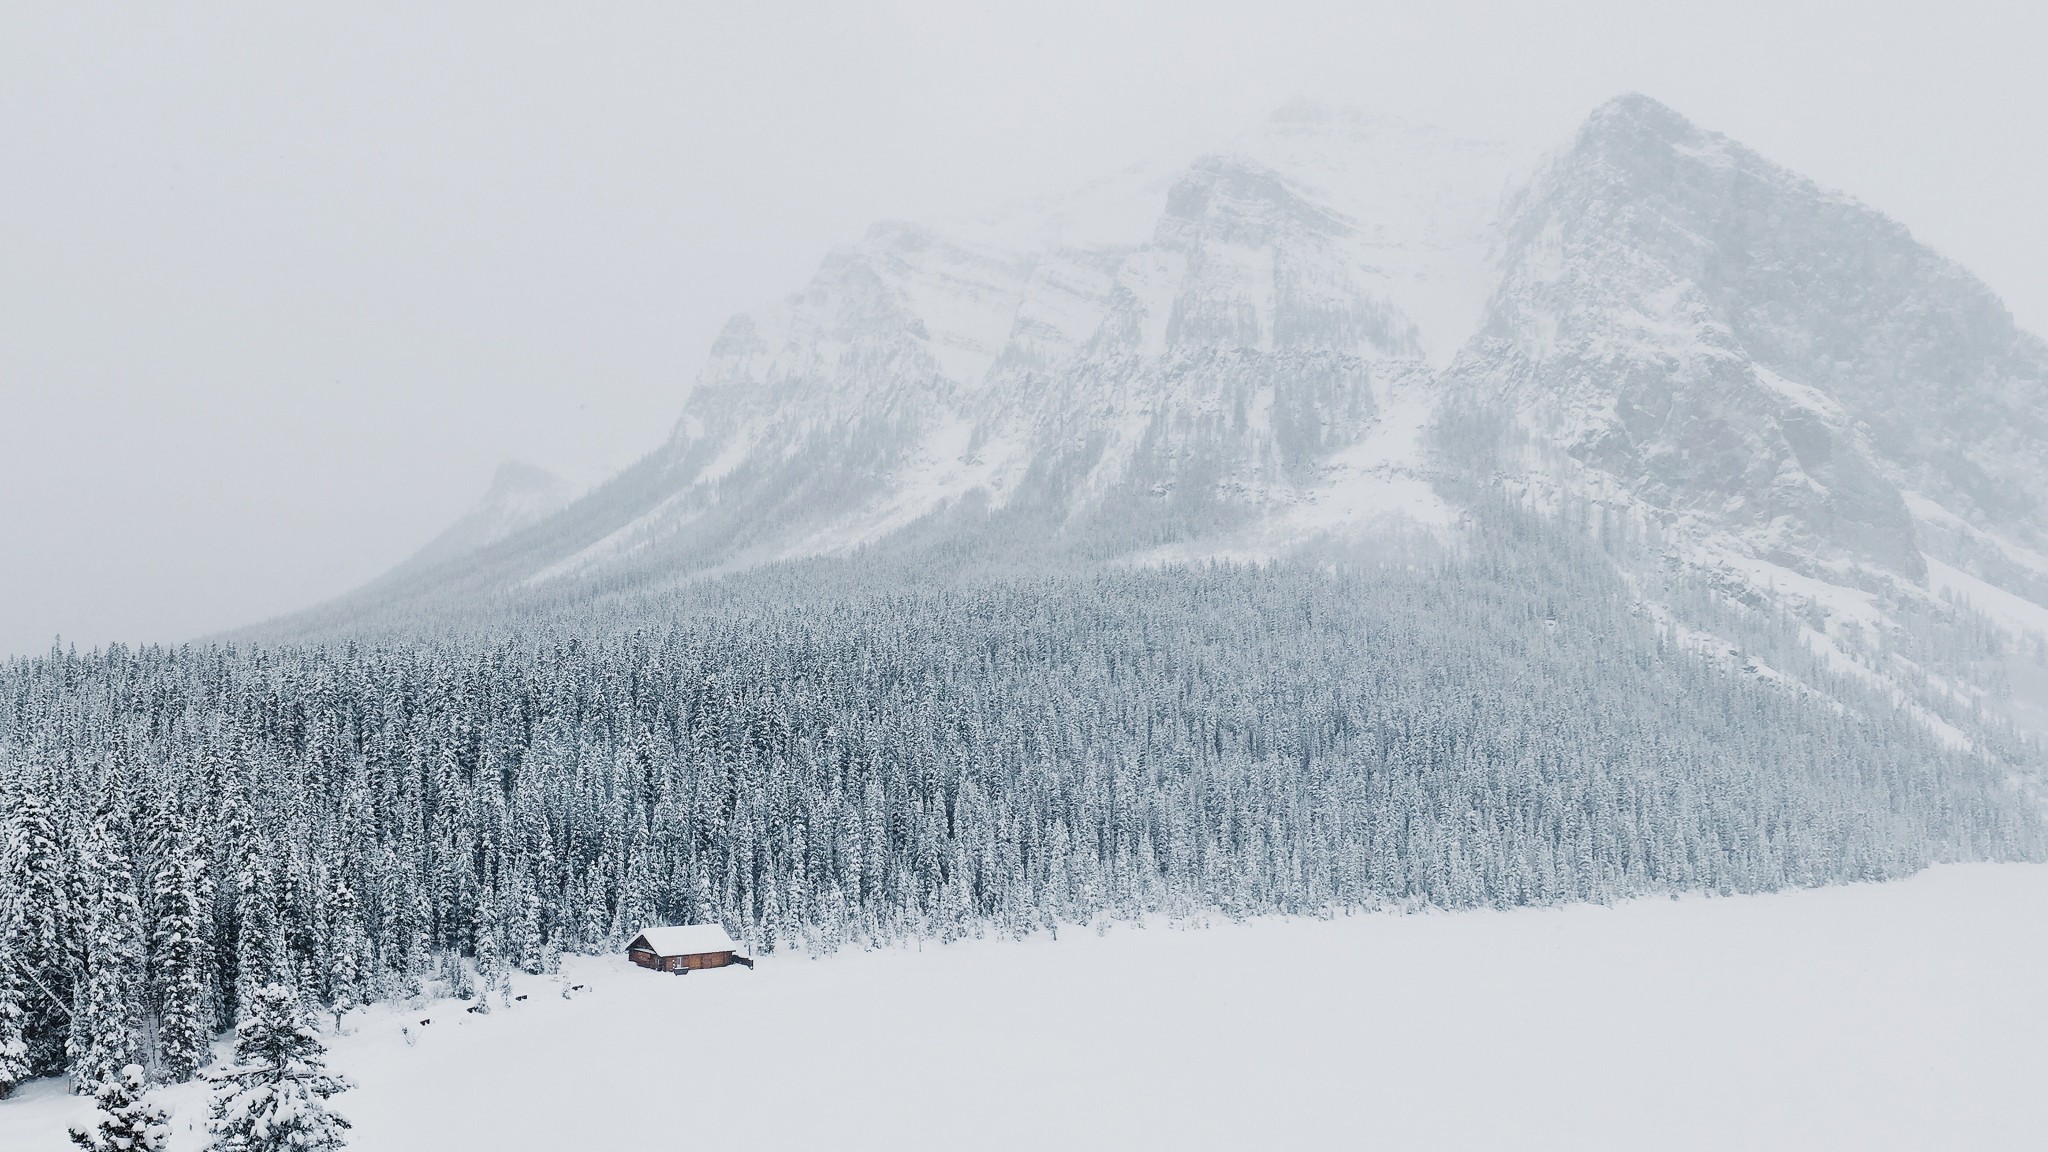 Скачать обои бесплатно Зима, Горы, Снег, Гора, Фотографии картинка на рабочий стол ПК